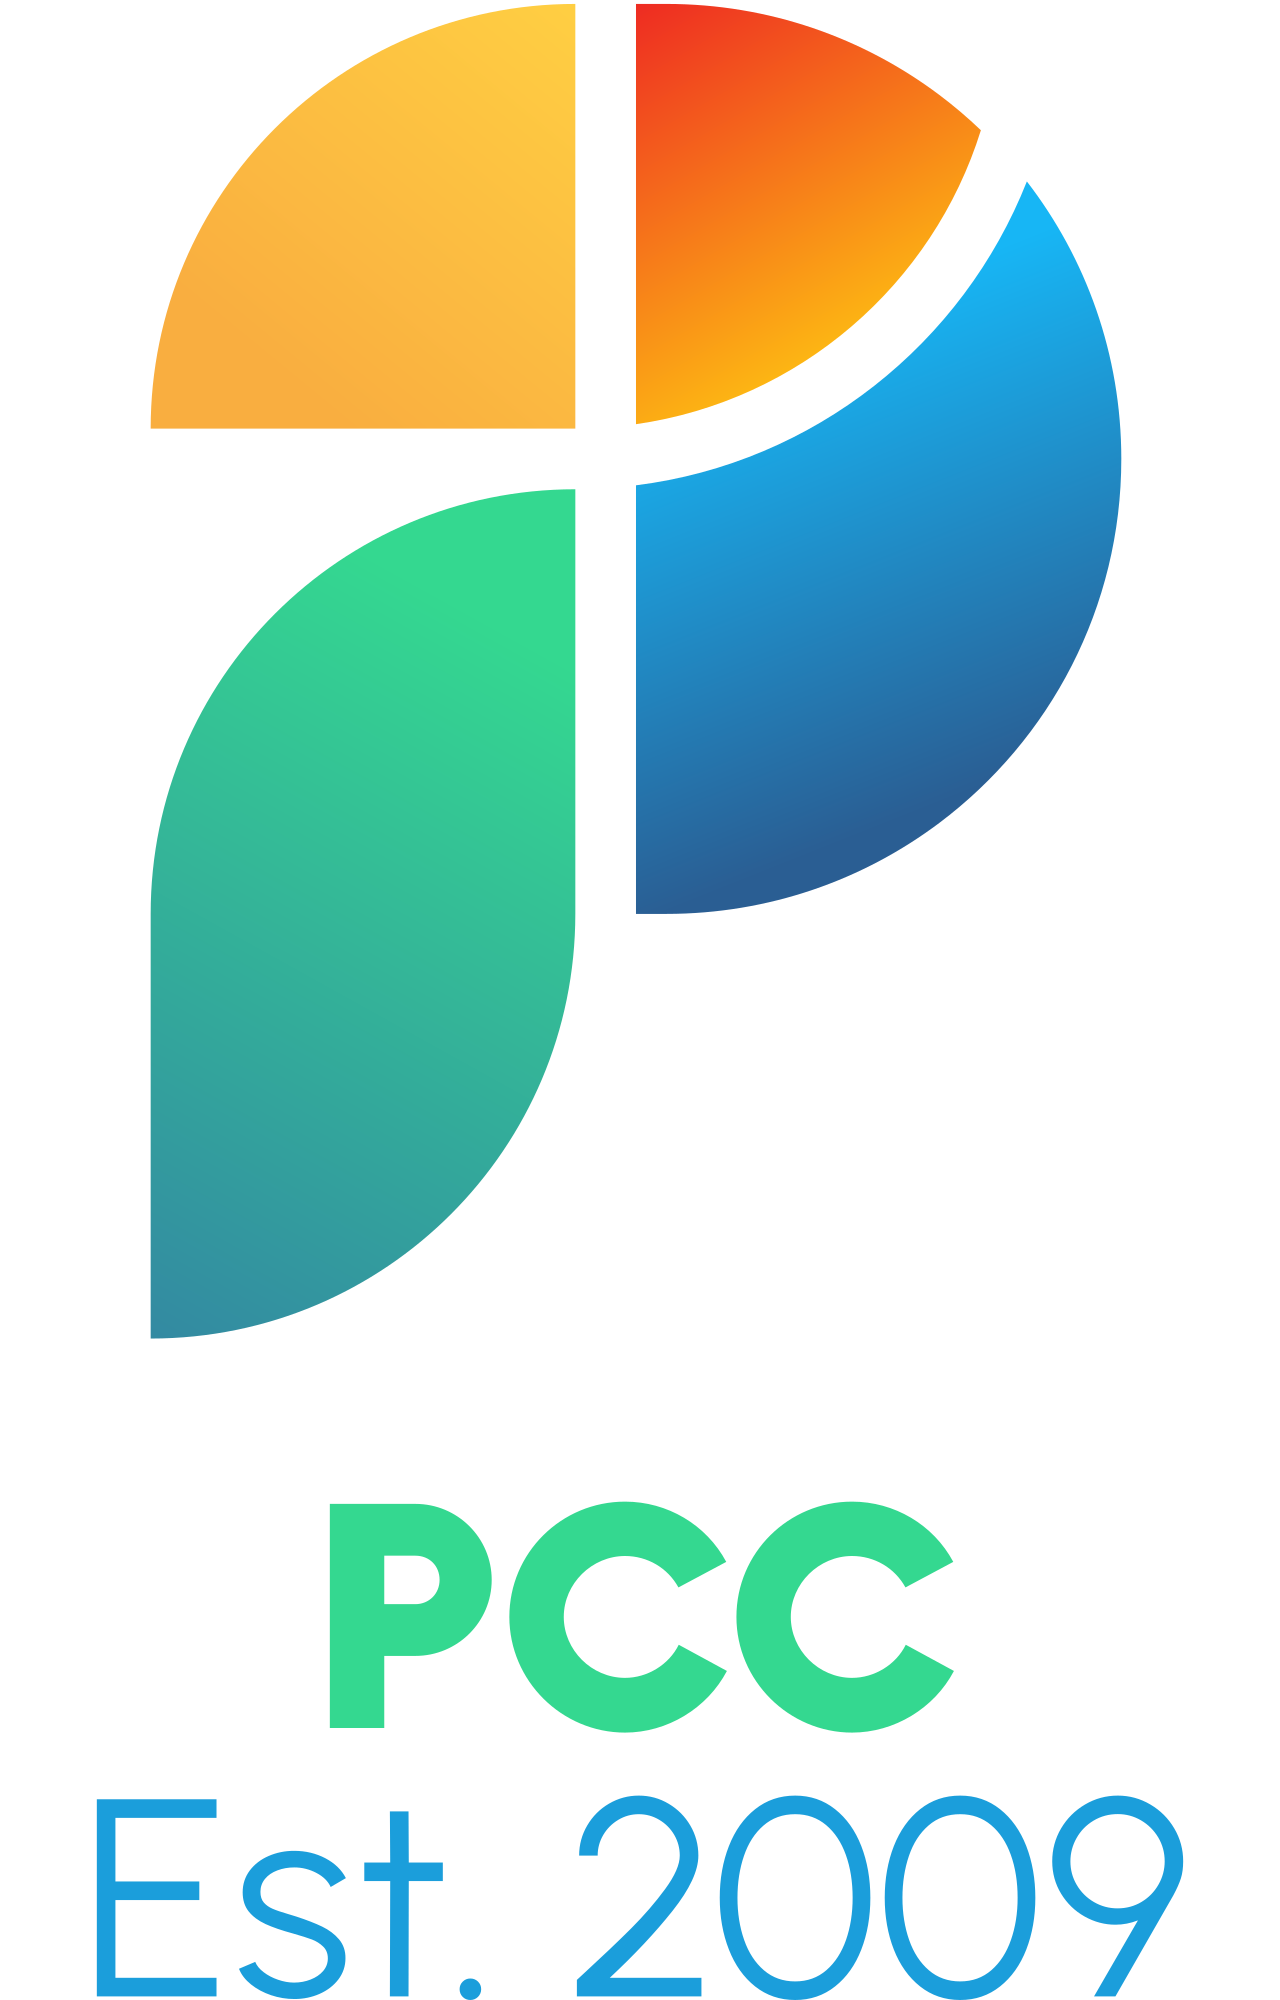 PCC's logo